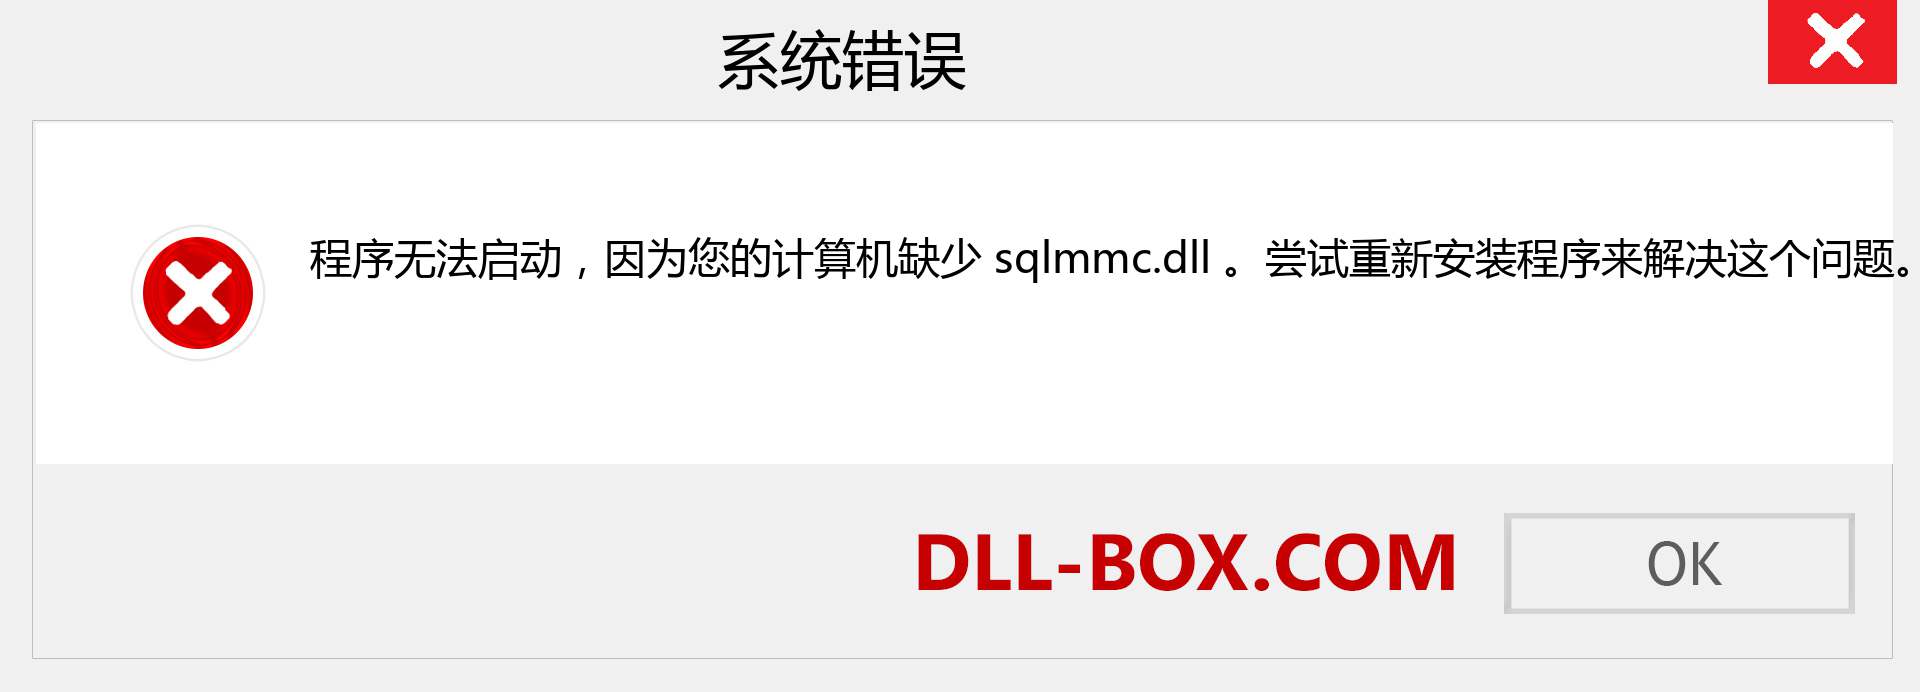 sqlmmc.dll 文件丢失？。 适用于 Windows 7、8、10 的下载 - 修复 Windows、照片、图像上的 sqlmmc dll 丢失错误